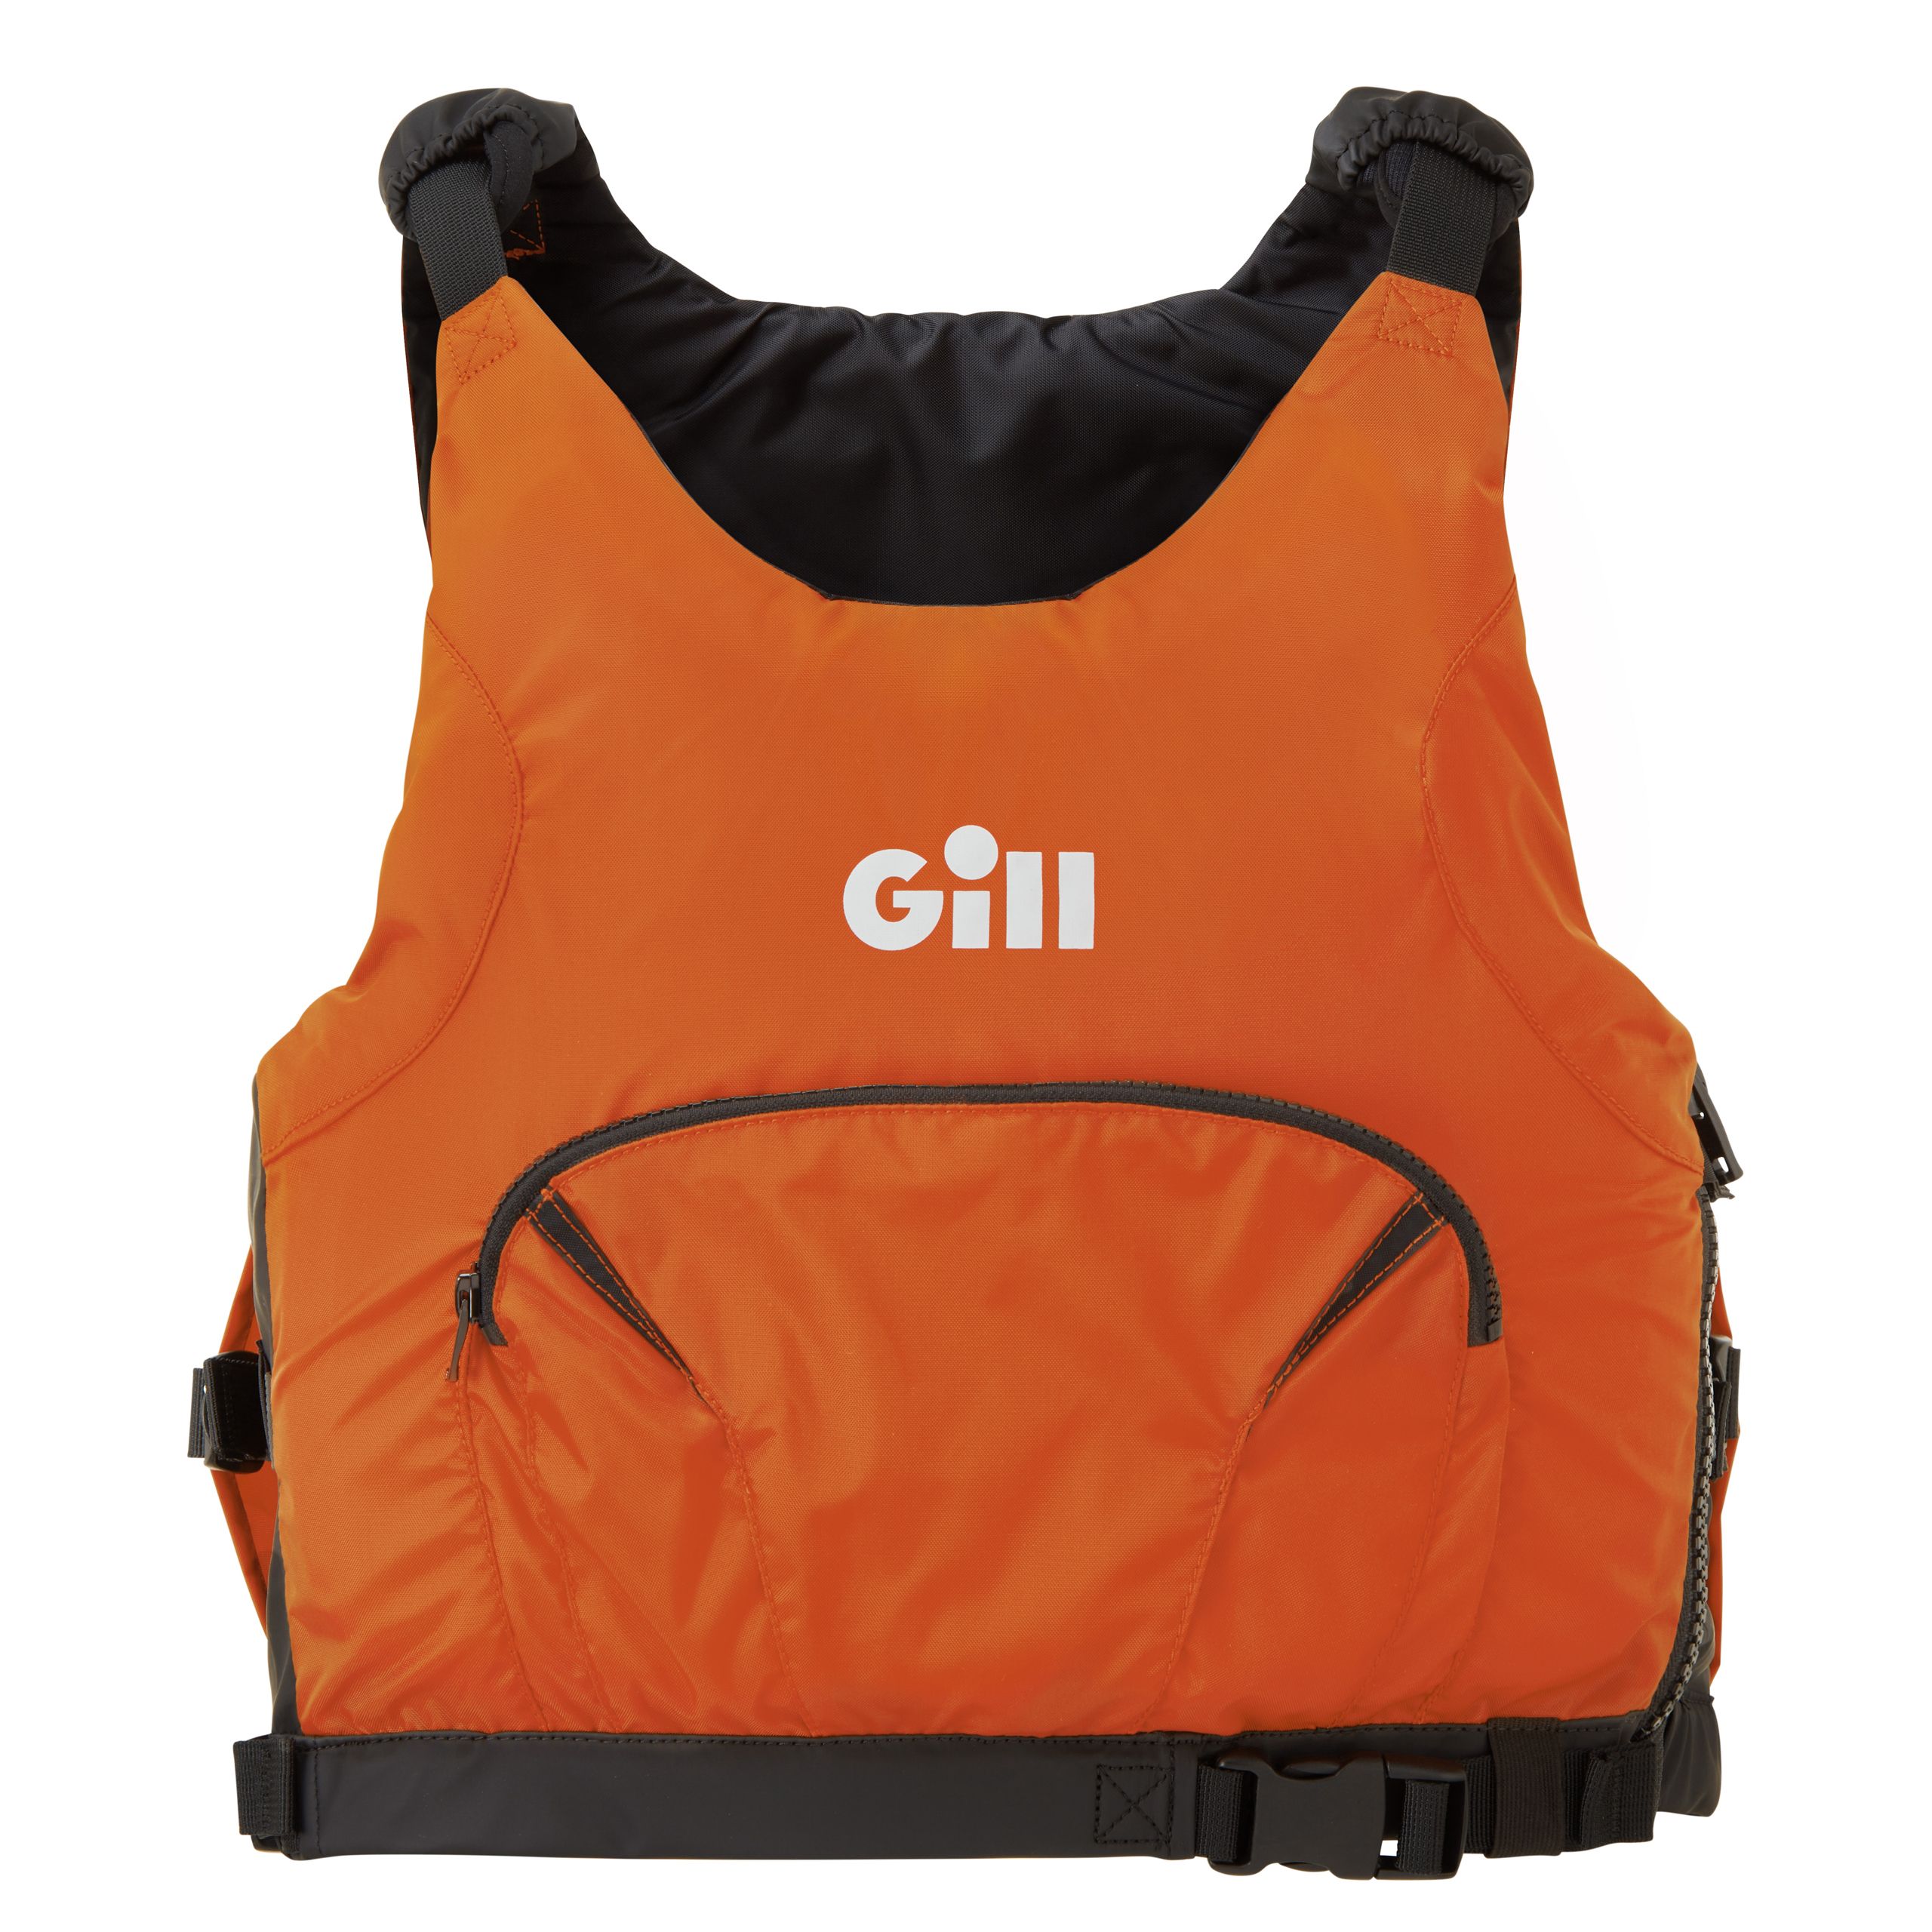 Gill Pro Racer Side Zip Buoyancy Aid